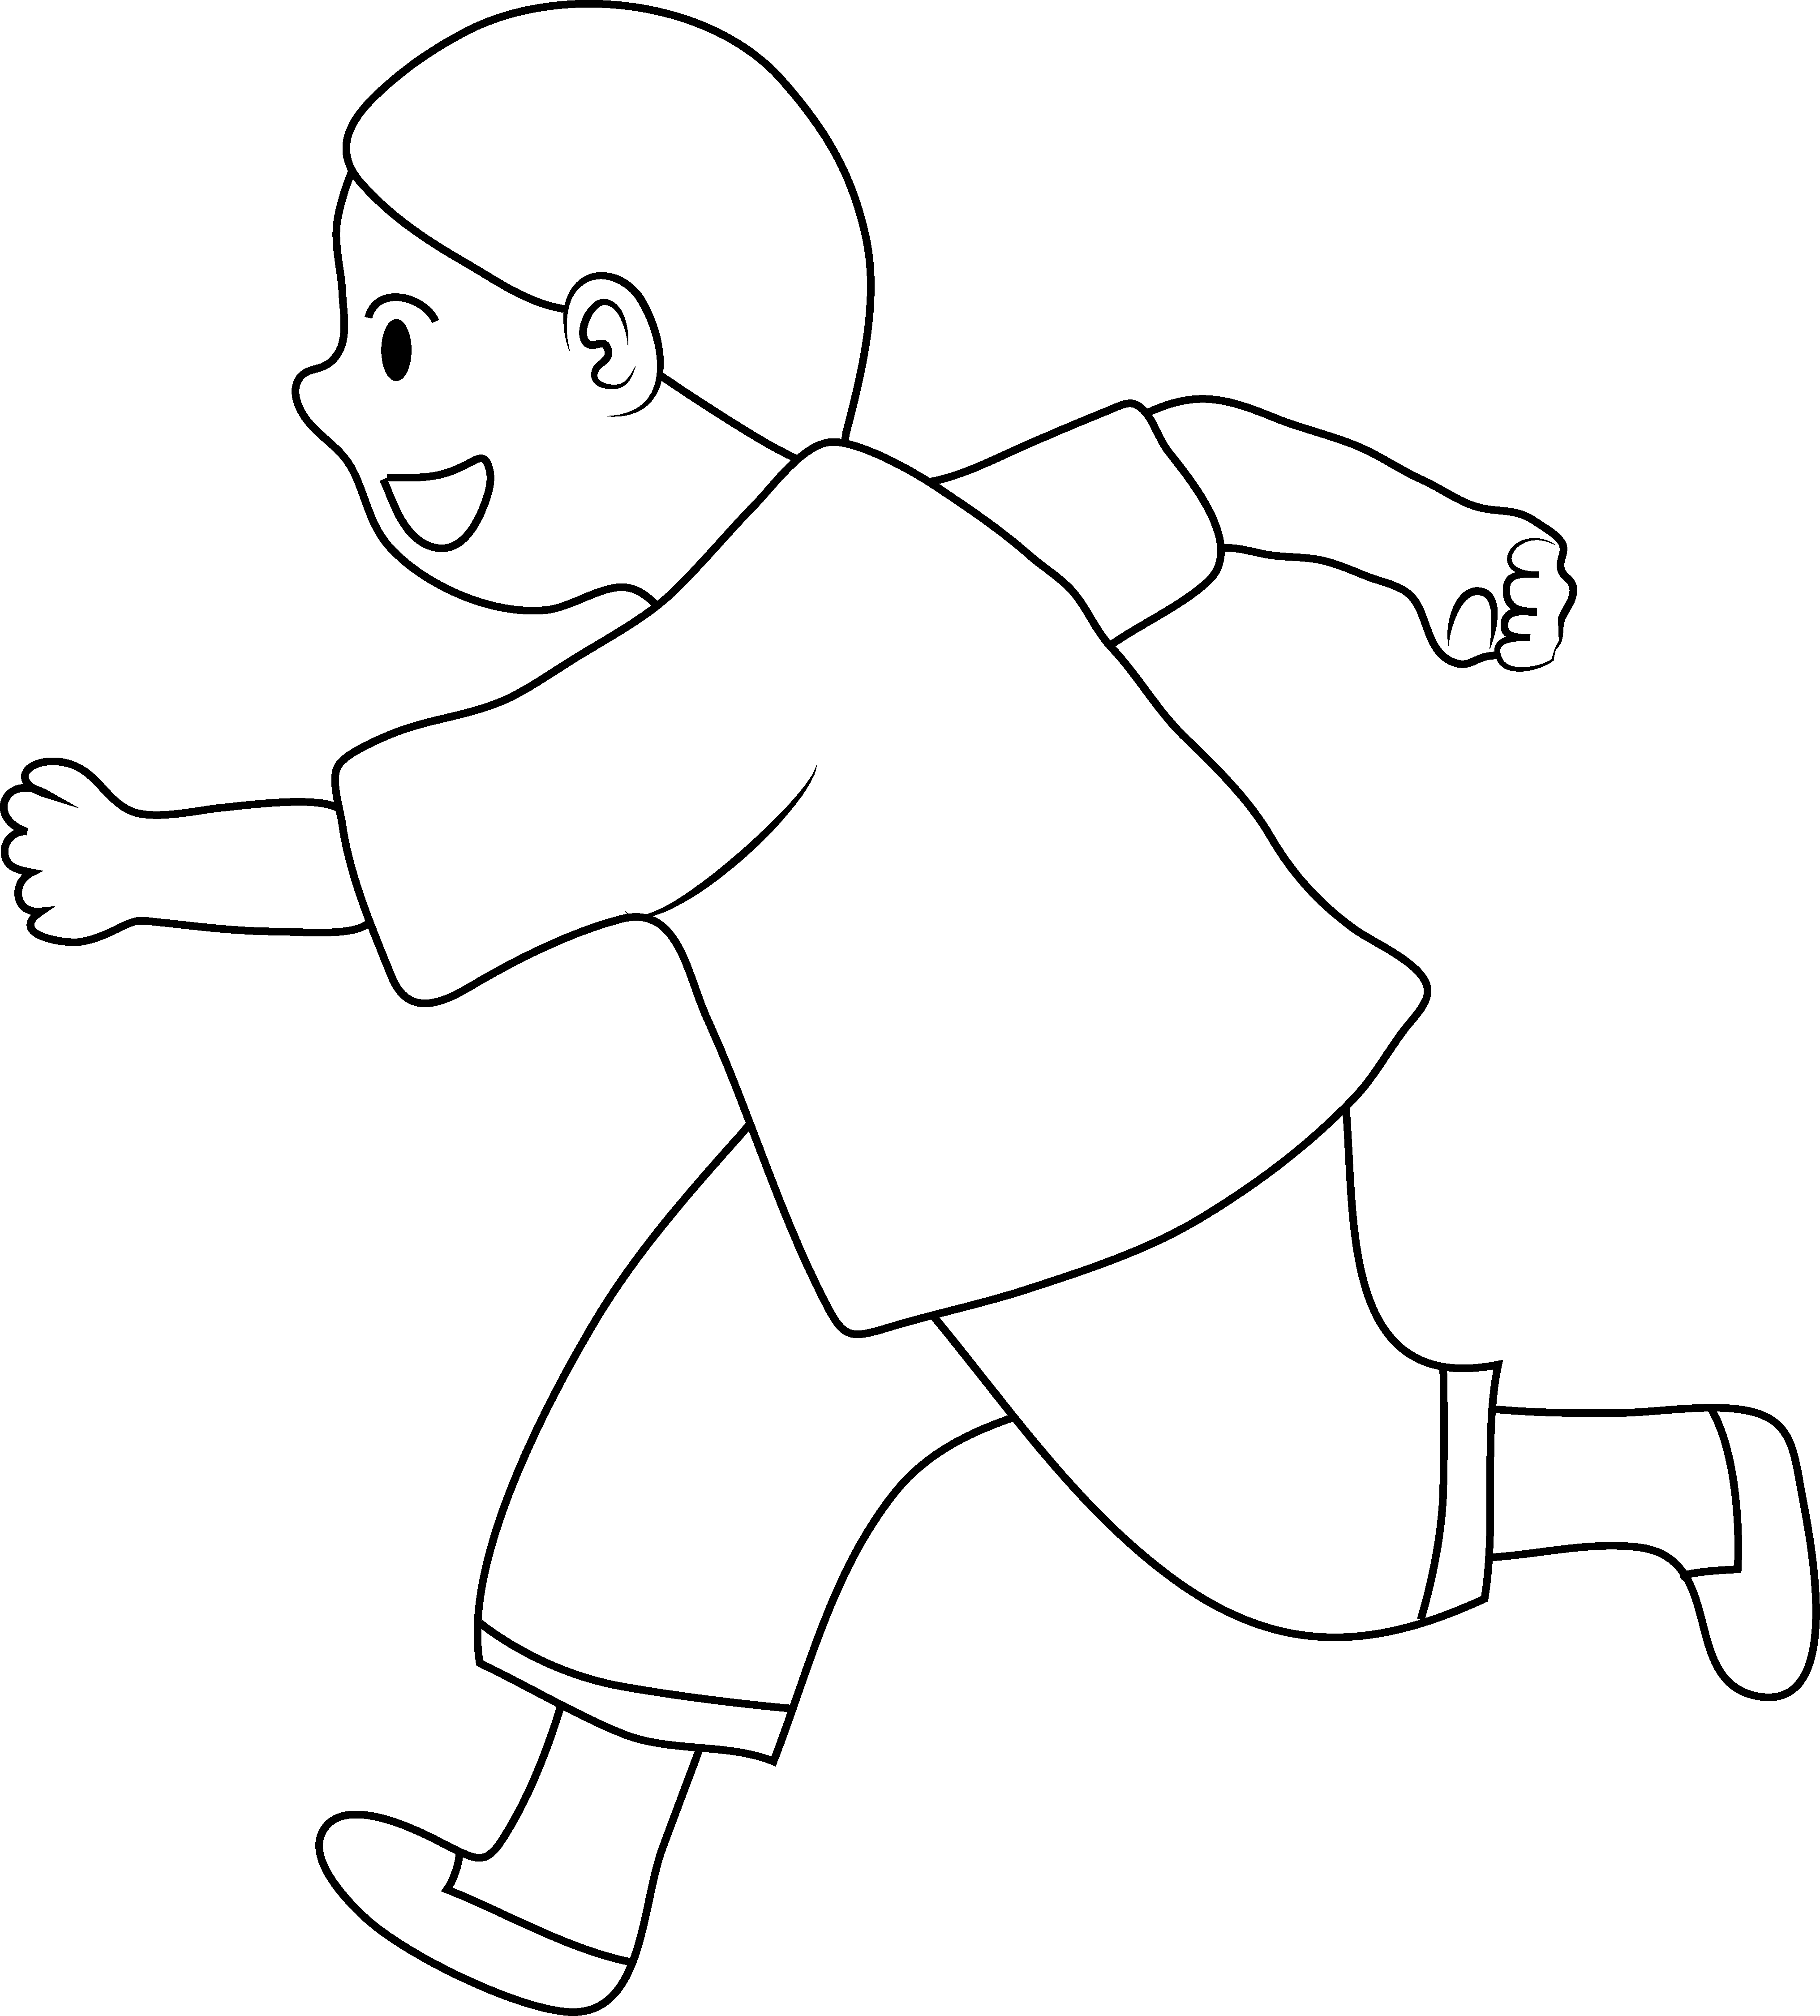 Line Art of Little Boy Running - Free Clip Art